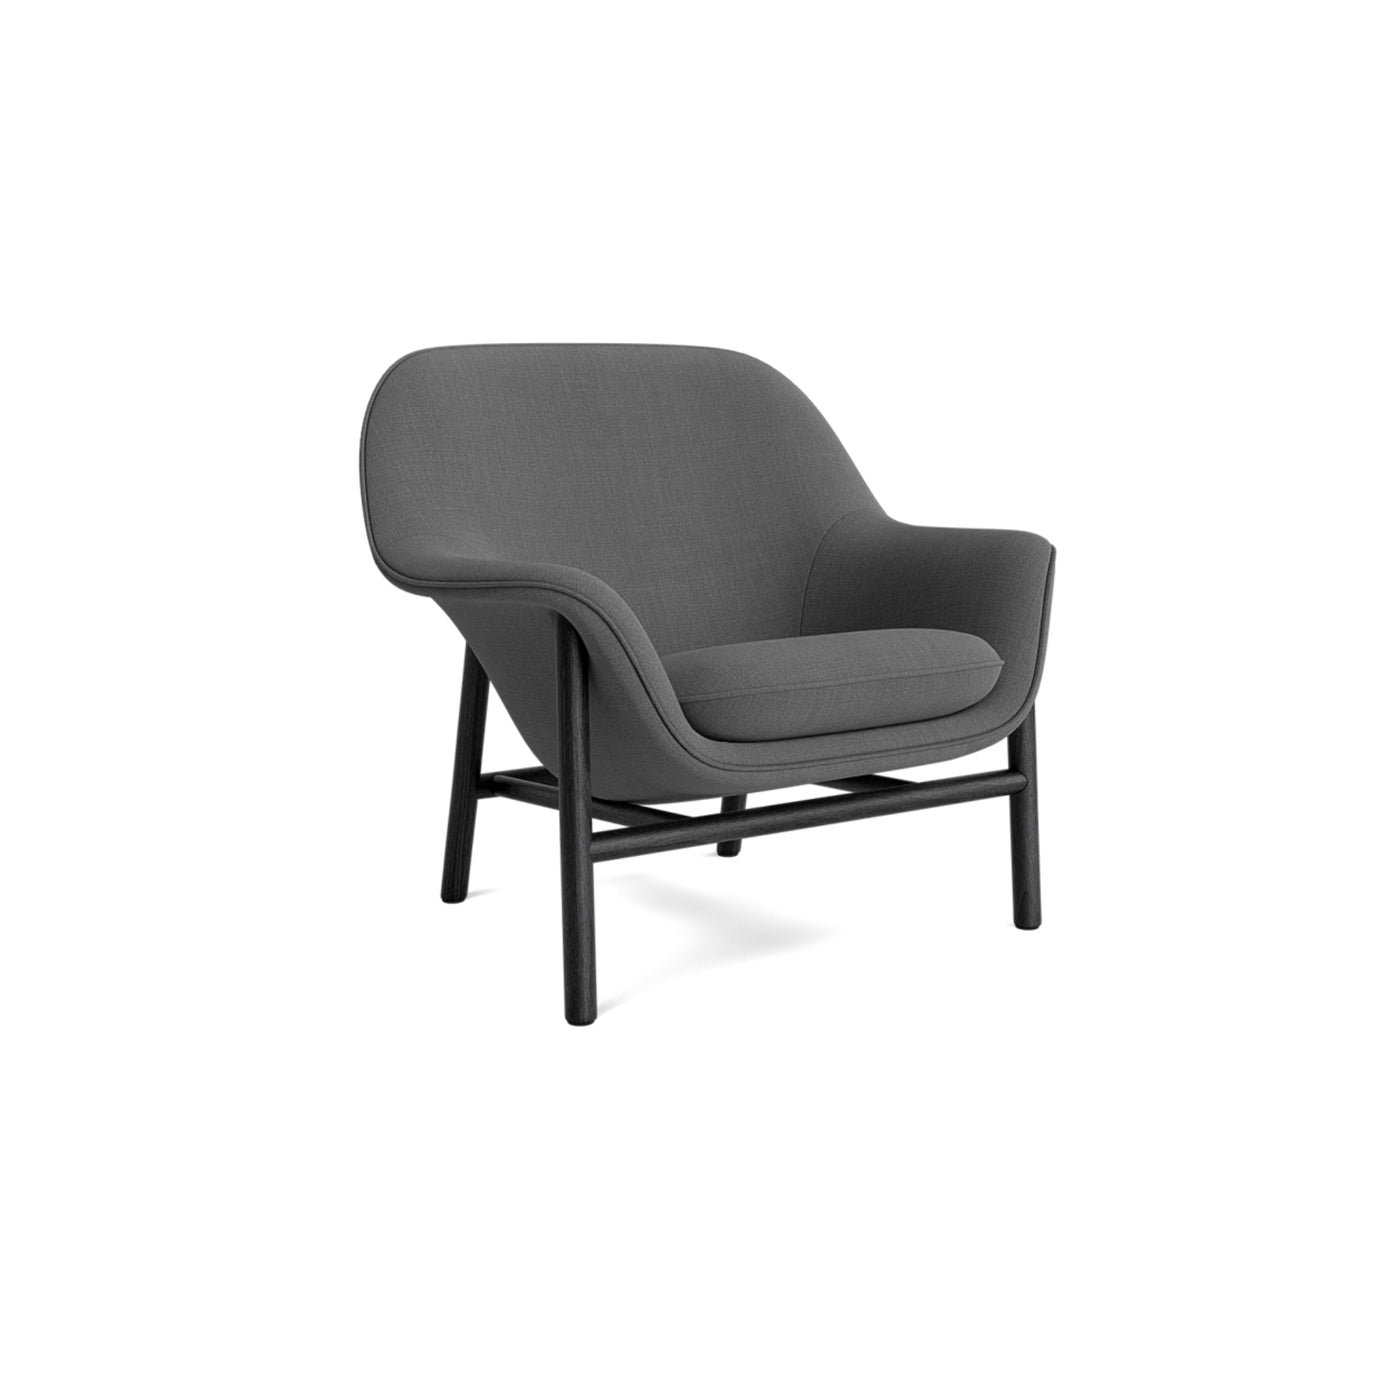 Normann Copenhagen Drape Lounge Chair at someday designs. #colour_remix-163